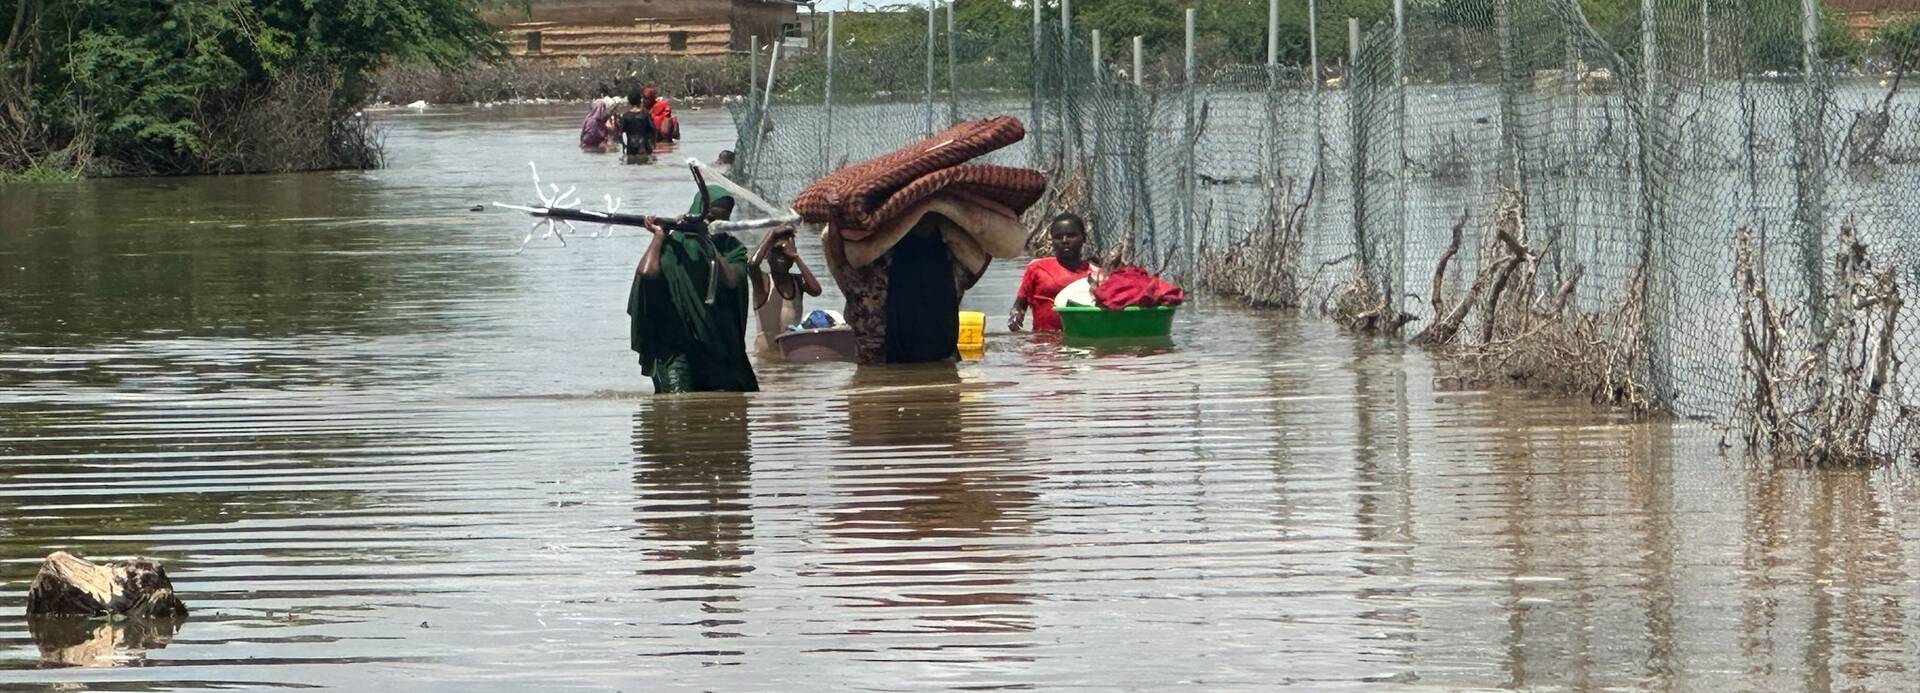 Eine Familie aus Somalia versucht, zumindest einen Teil ihrer Habseligkeiten vor den Überflutungen zu retten. Sie laufen durchs hüfthohe Wasser.